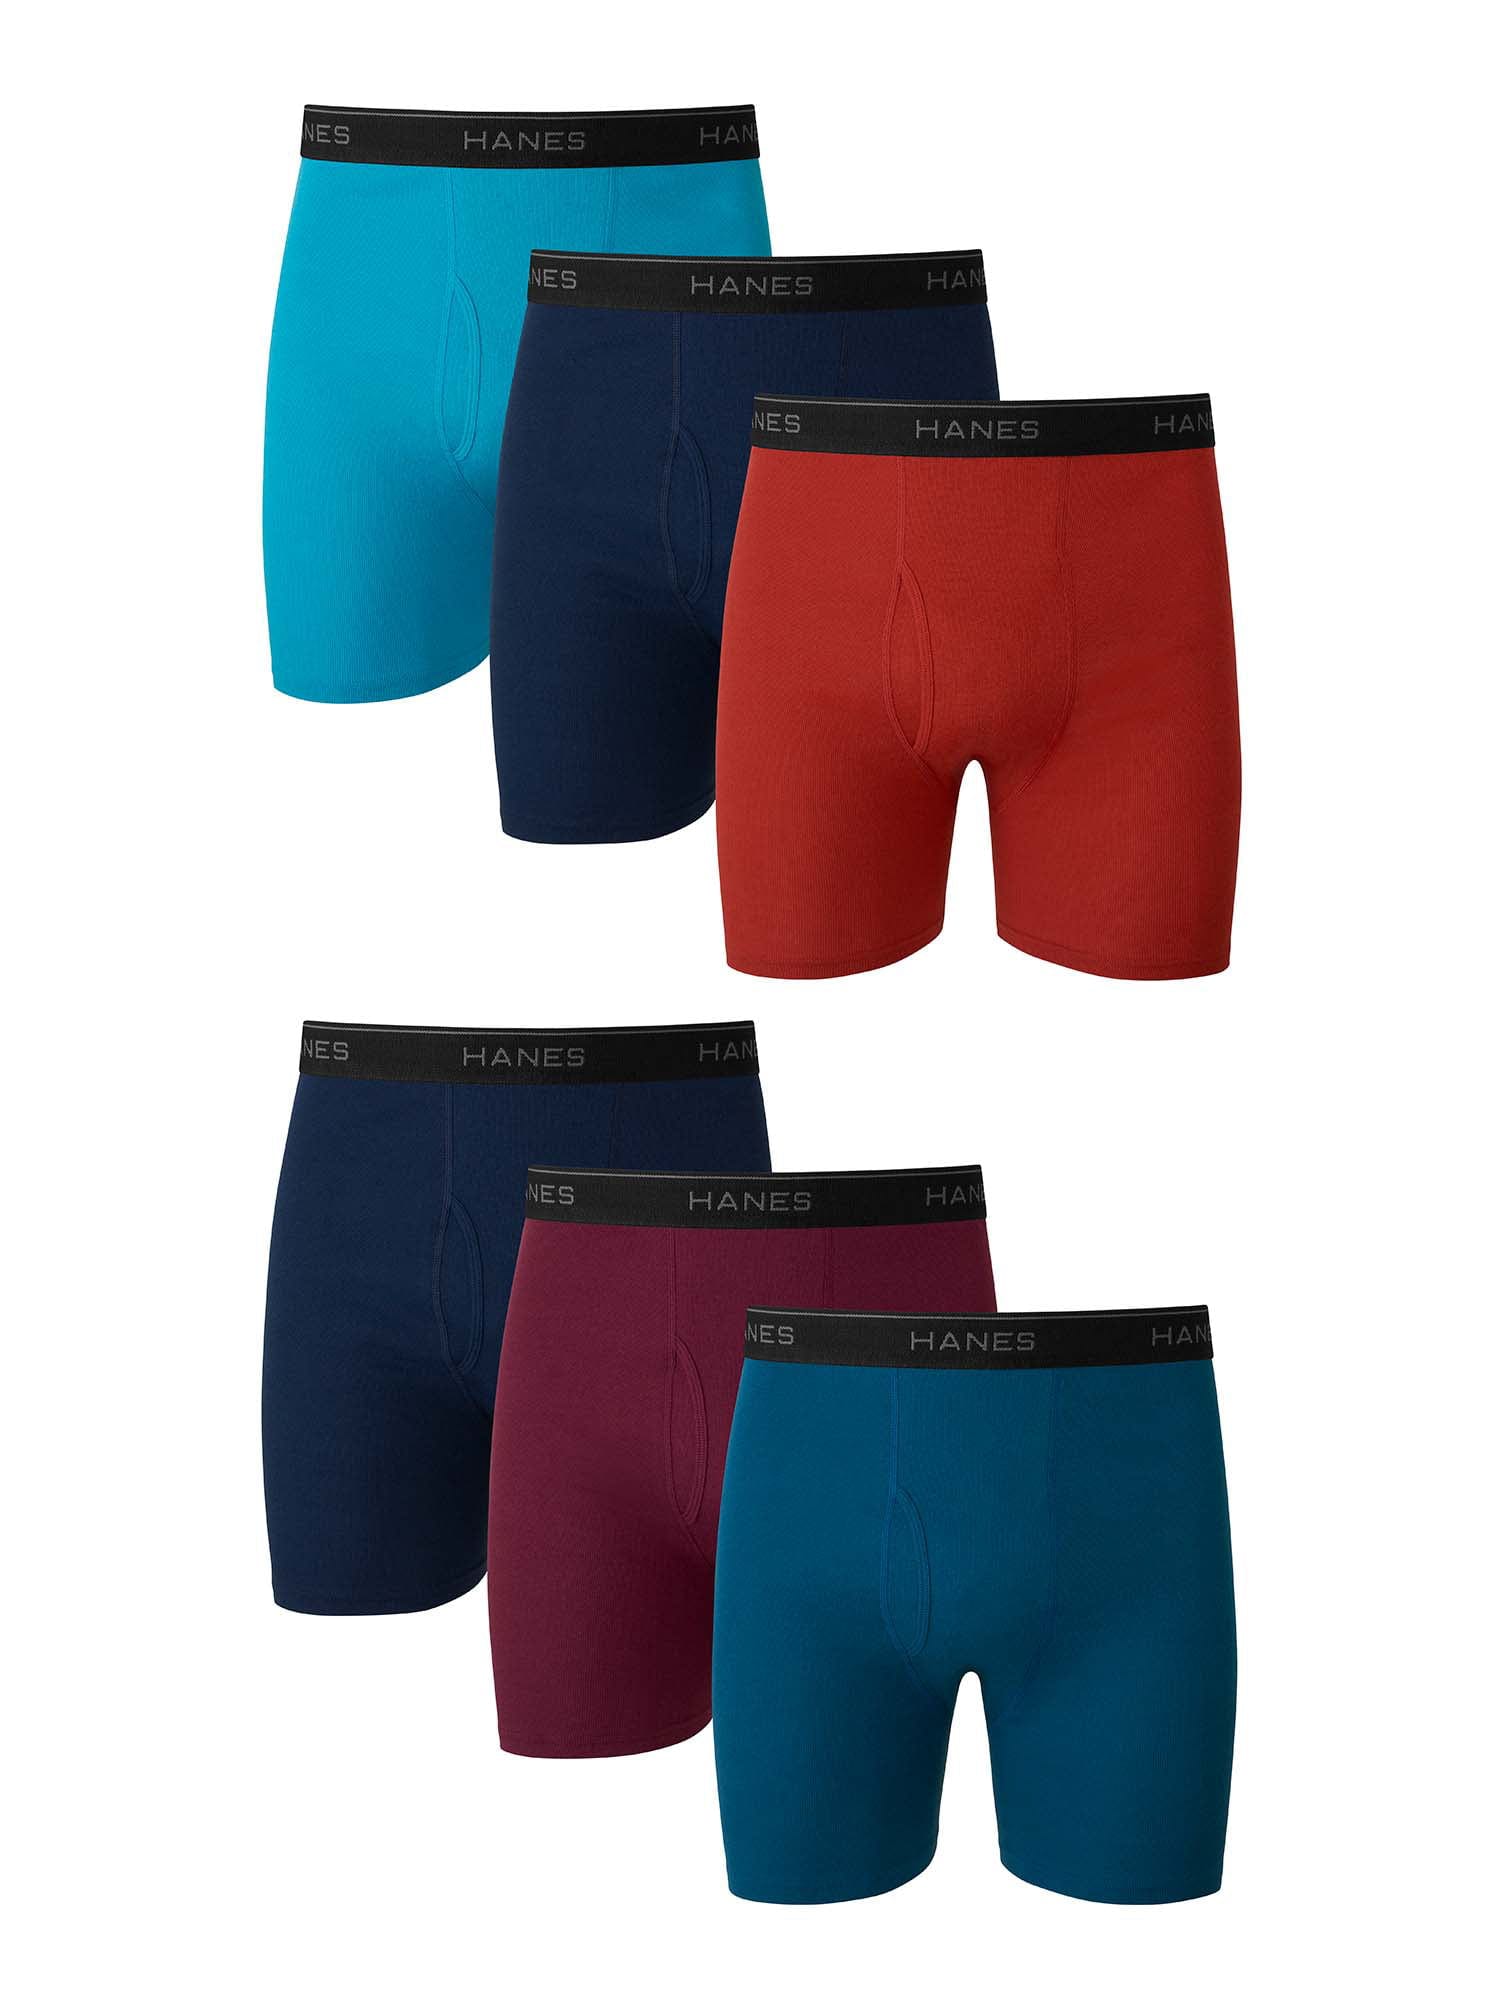 Reebok Boys Underwear Performance Boxer Briefs, XLarge, 5-Pack